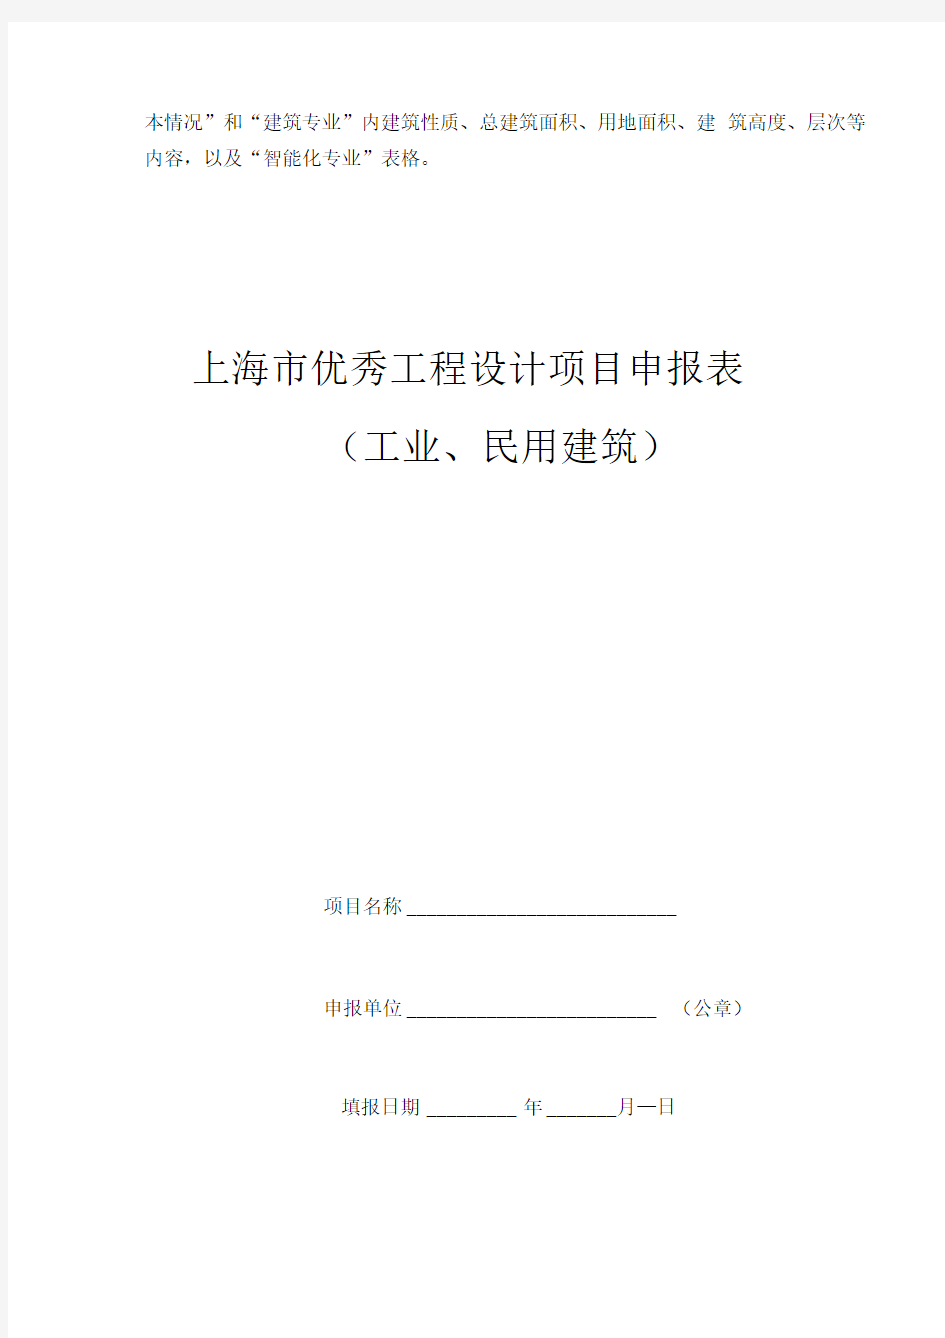 上海市优秀工程设计项目(工业、民用建筑)申报表和填写说明